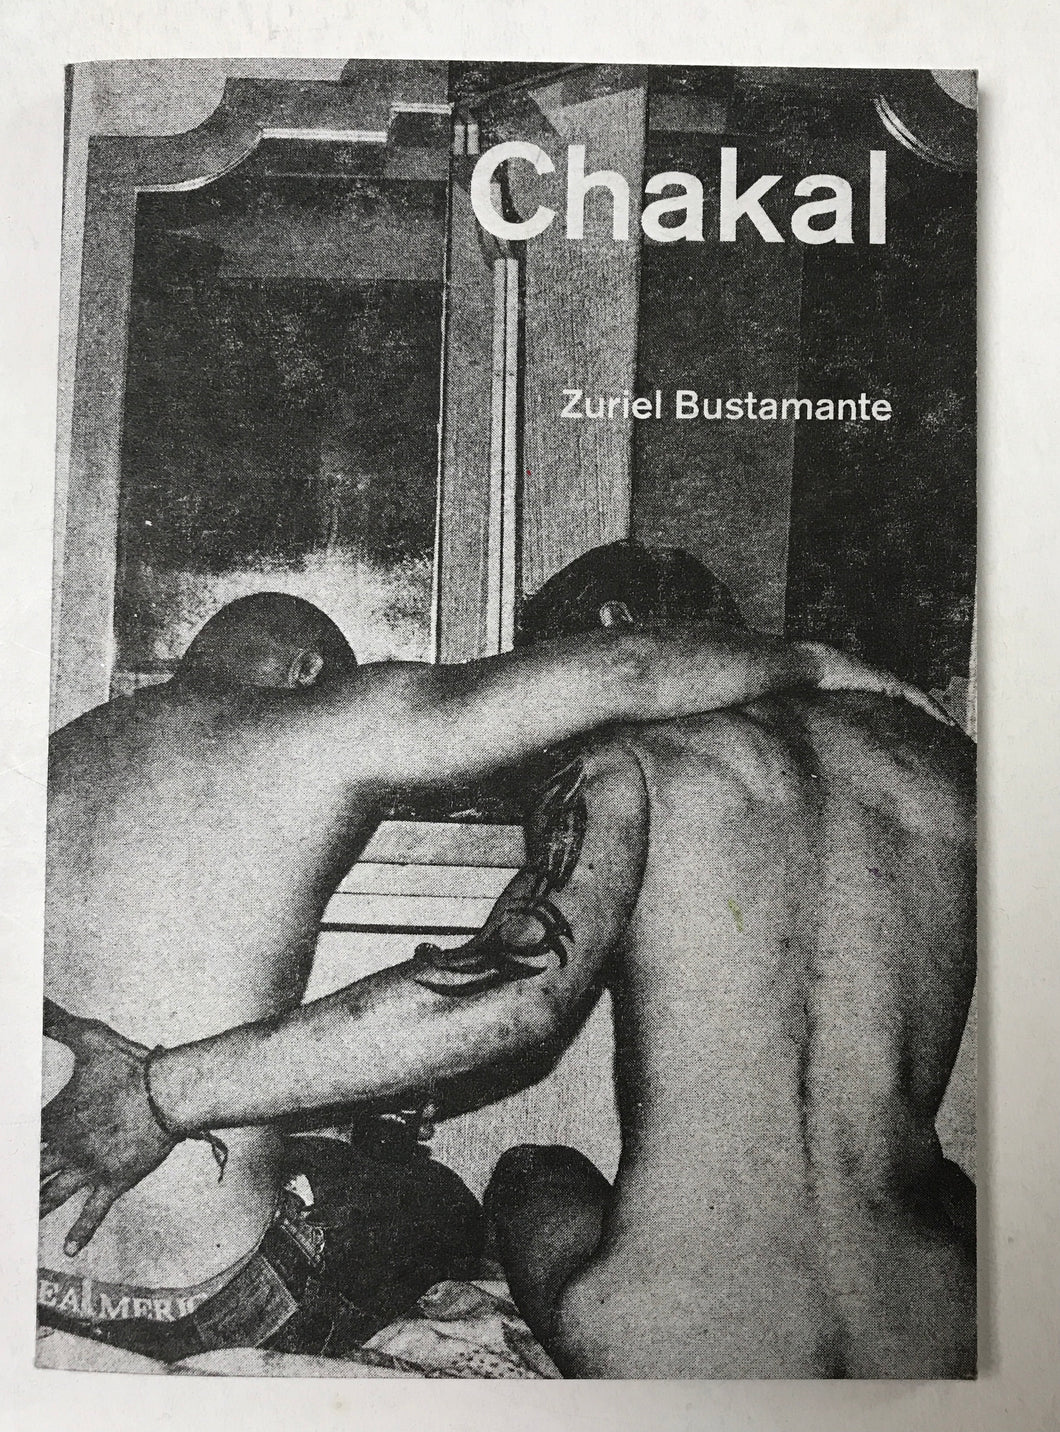 Chakal | Zuriel Bustamante (Gato Negro)